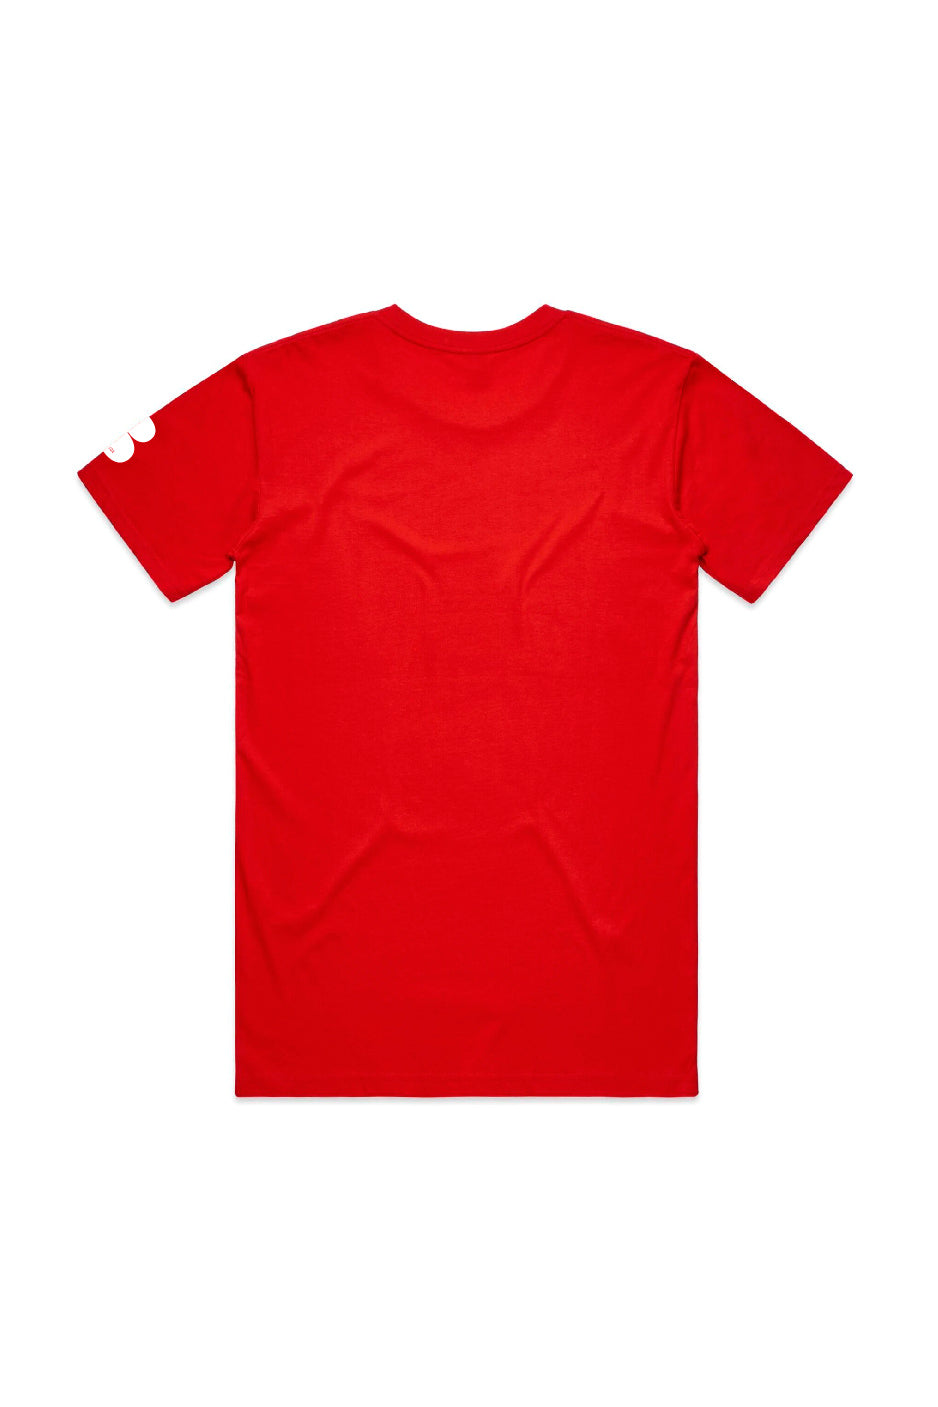 Red OG T-Shirt - White Print